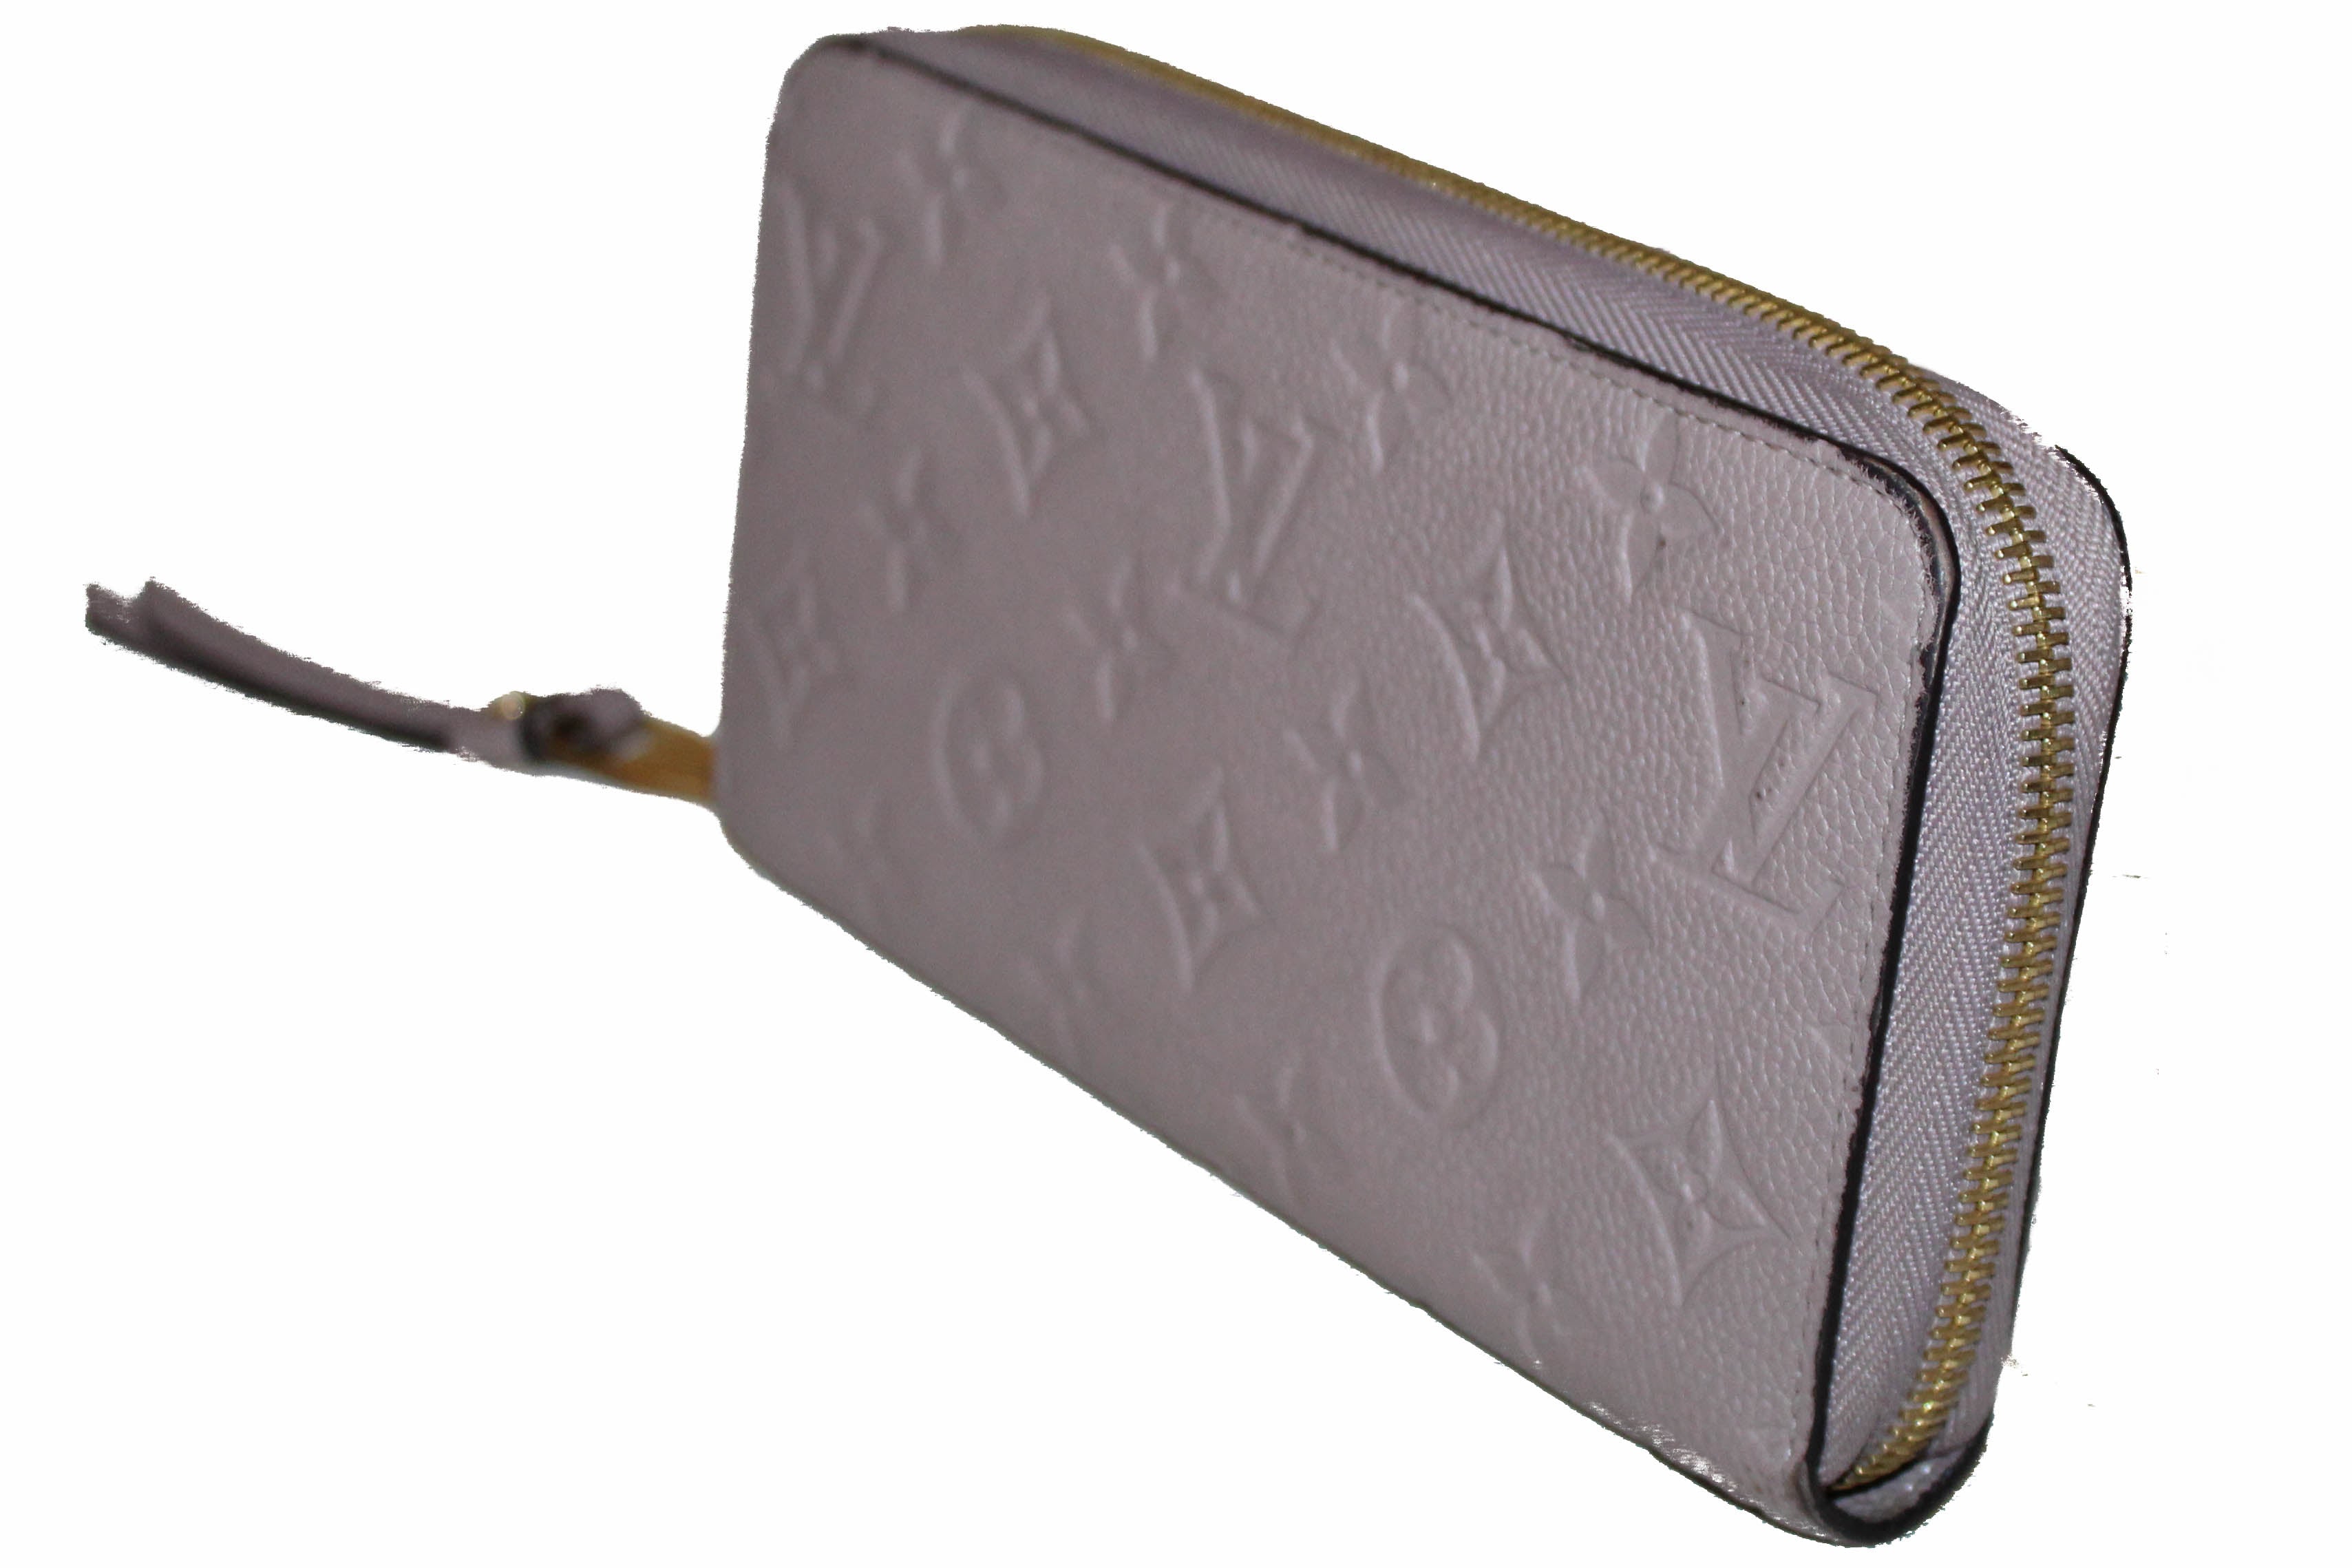 Authentic Louis Vuitton Mastic Monogram Empreinte Leather Zippy Wallet